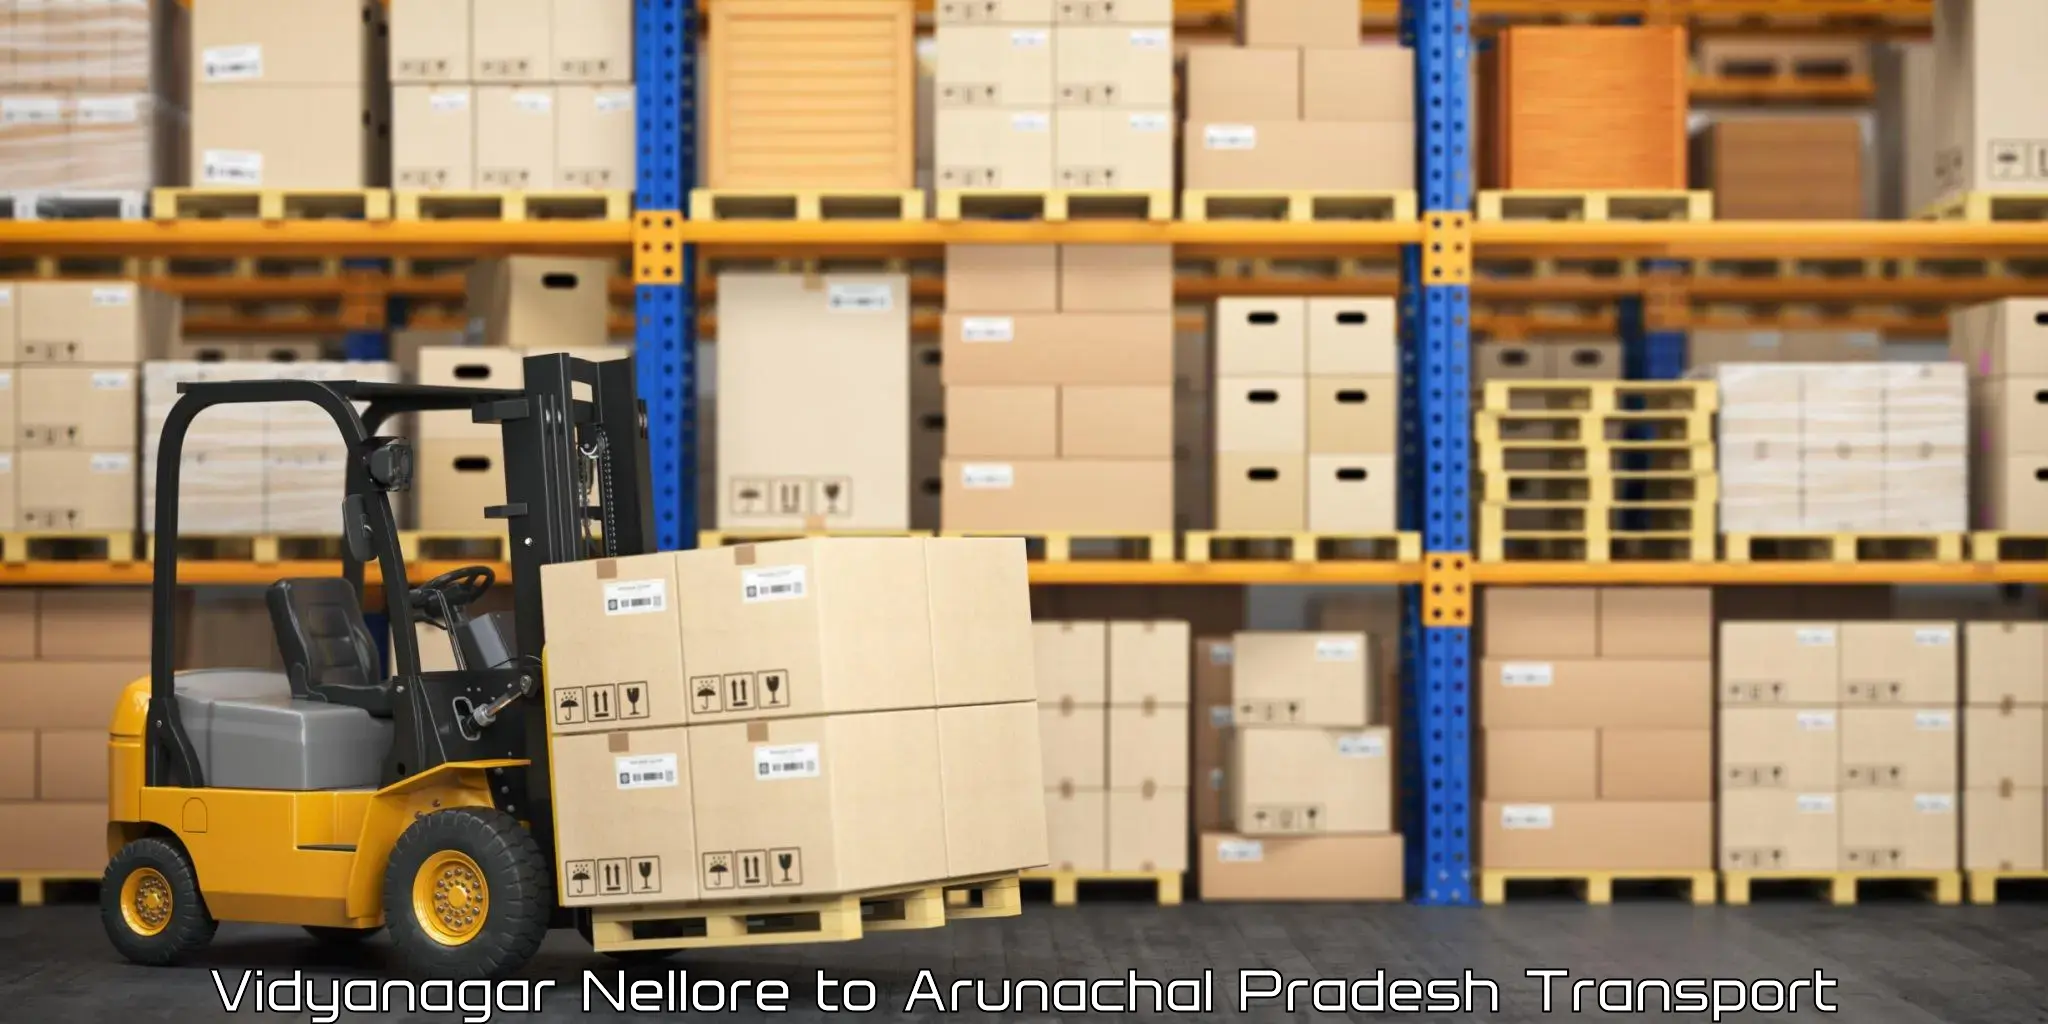 Daily parcel service transport Vidyanagar Nellore to Arunachal Pradesh